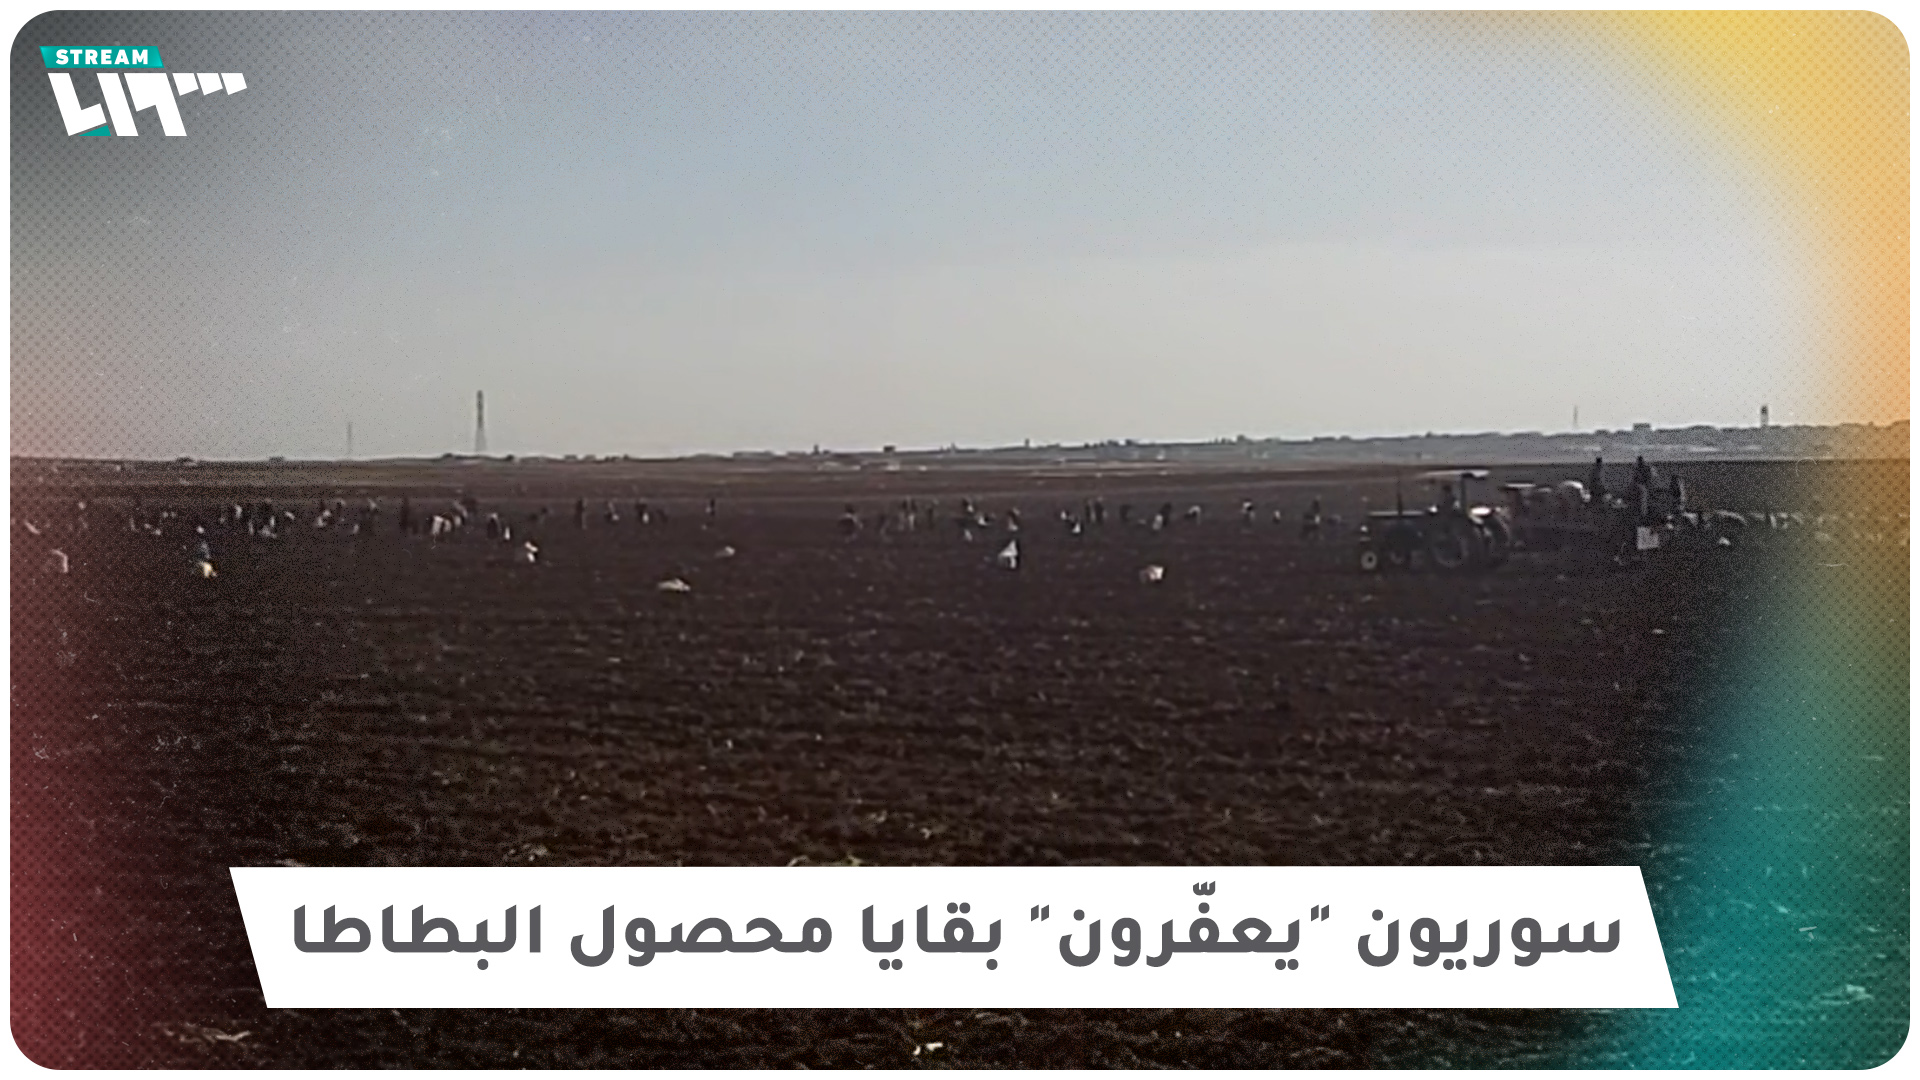 سوريون "يعفّرون" بقايا محصول البطاطا بريف إدلب